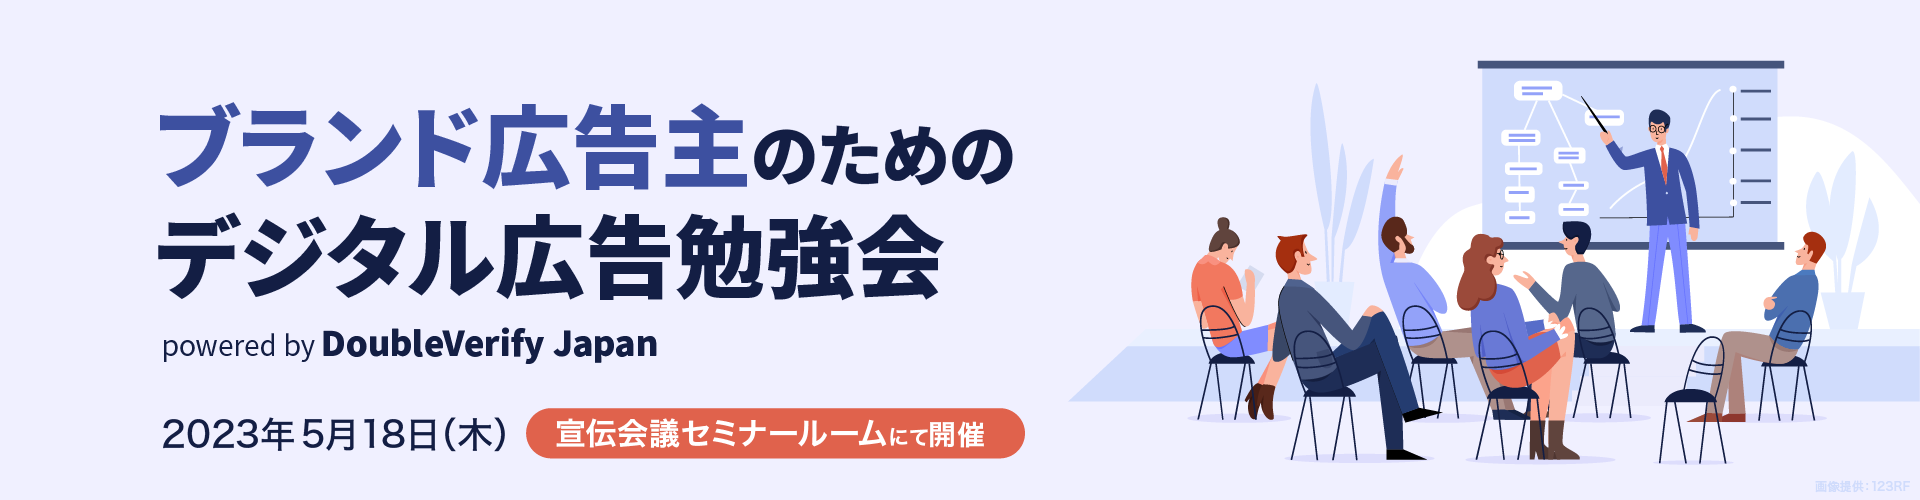 ブランド広告主のためのデジタル広告勉強会 powered by DoubleVerify Japan